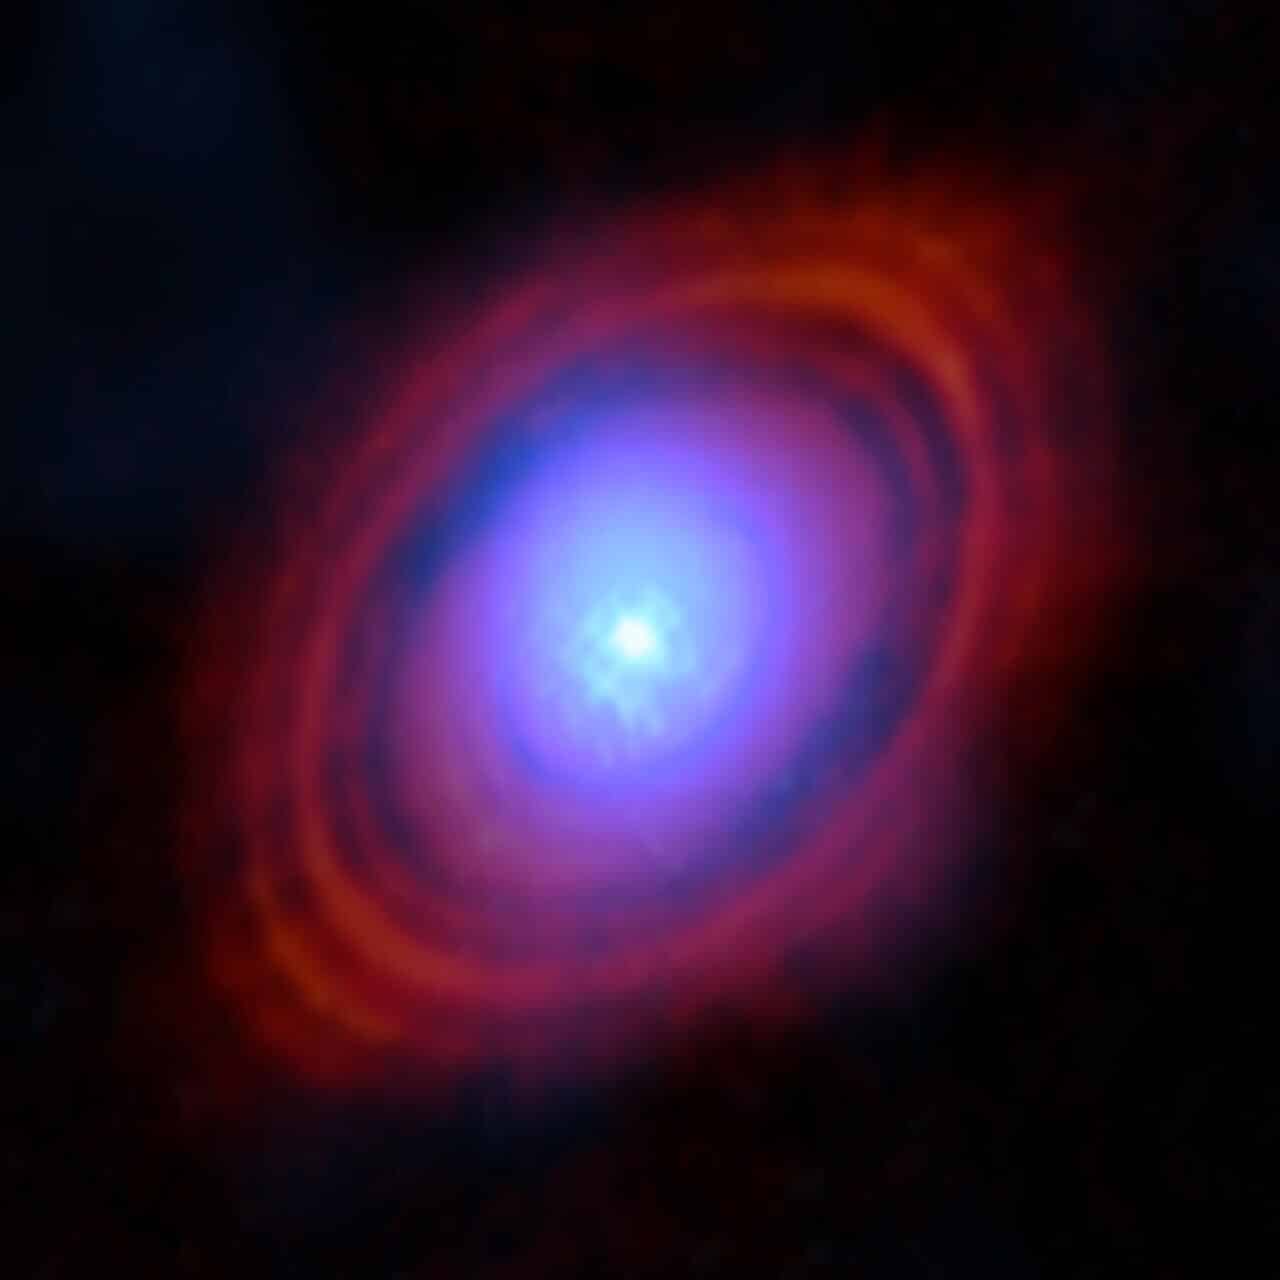 אסטרונומים מצאו אדי מים בדיסקה סביב כוכב צעיר בדיוק במקום שבו כוכבי לכת עשויים להיווצר. בתמונה זו, התצפיות החדשות ממערך המילימטר/תת-מילימטר הגדול של אטקמה (ALMA), שבו ESO שותפה, מראות את אדי המים בגוונים של כחול. ליד מרכז הדיסקה, שם חי הכוכב הצעיר, הסביבה חמה יותר והגז בהיר יותר. הטבעות האדומות הן תצפיות קודמות של אלמה המראות את פיזור האבק סביב הכוכב.קרדיט: ALMA (ESO/NAOJ/NRAO)/S. Facchini et al.